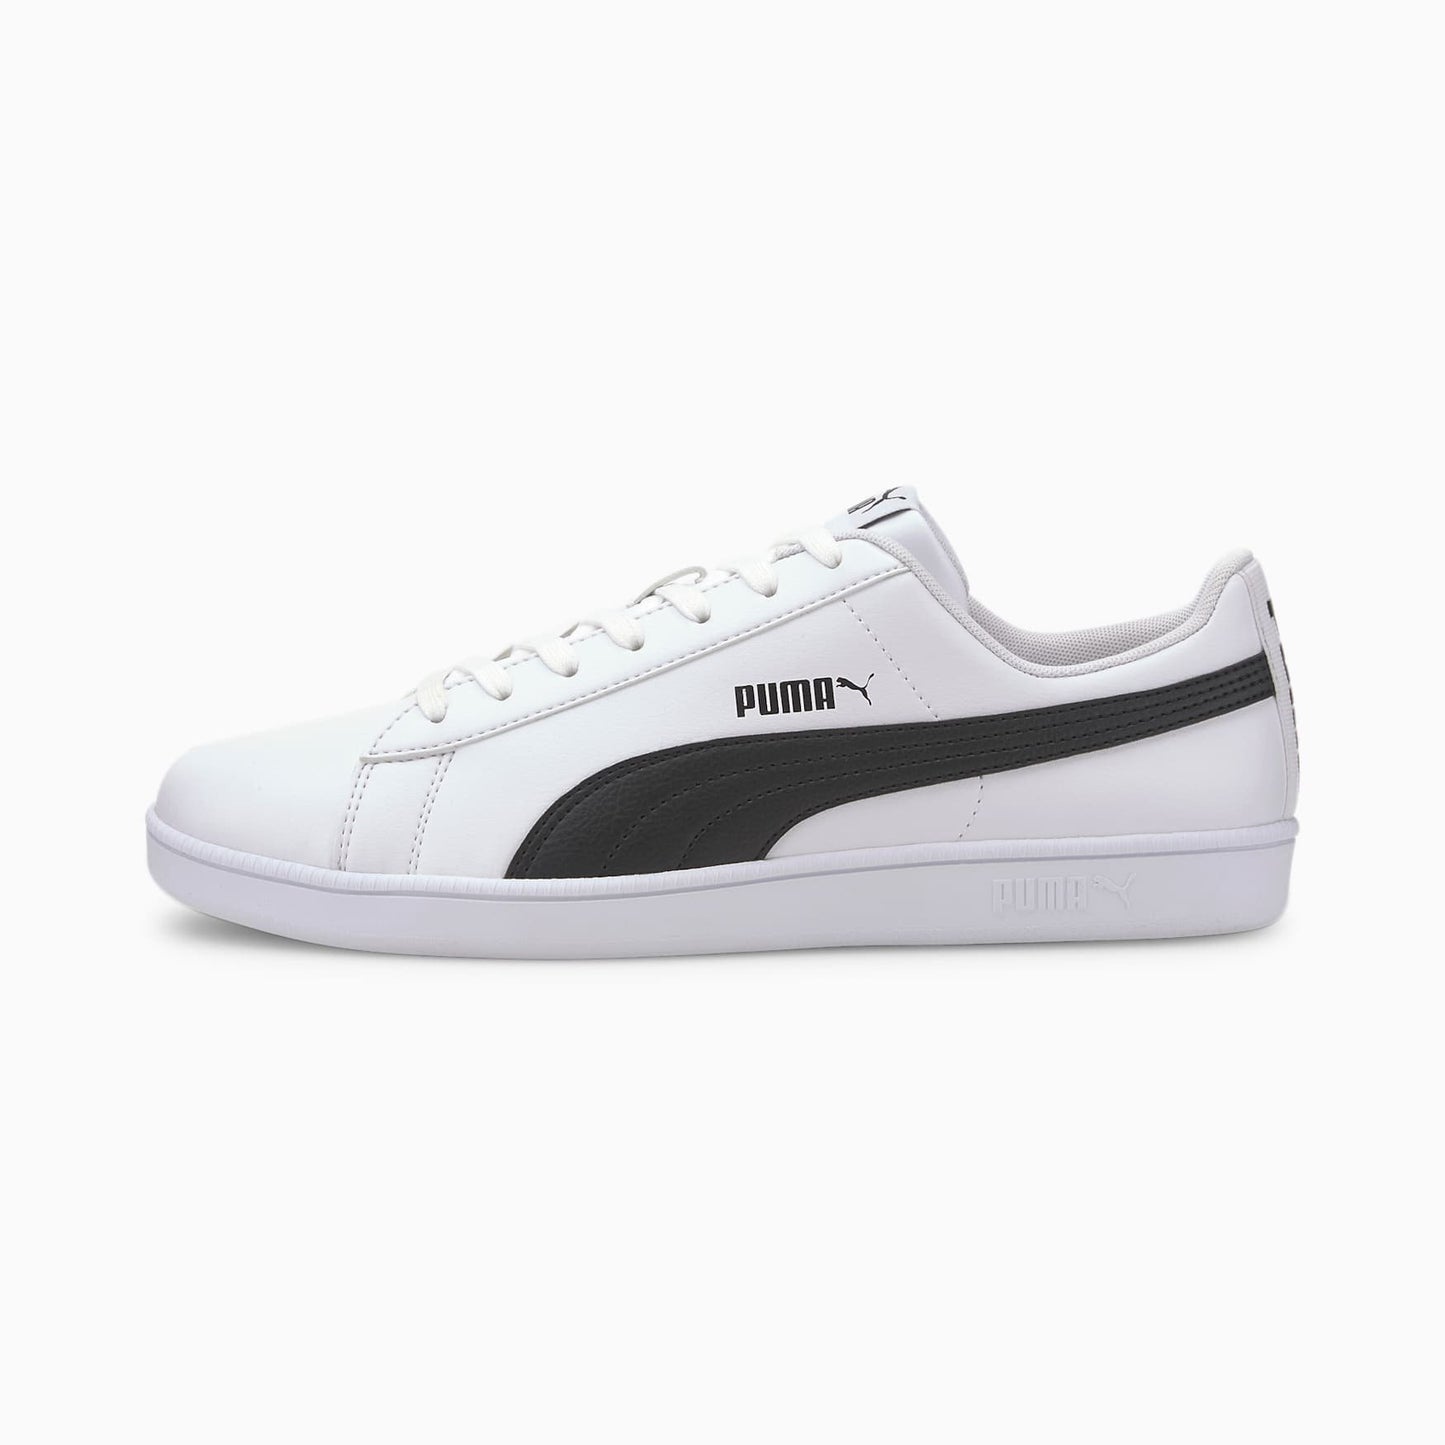 Men's shoes Puma Up Puma Black white 372605 02